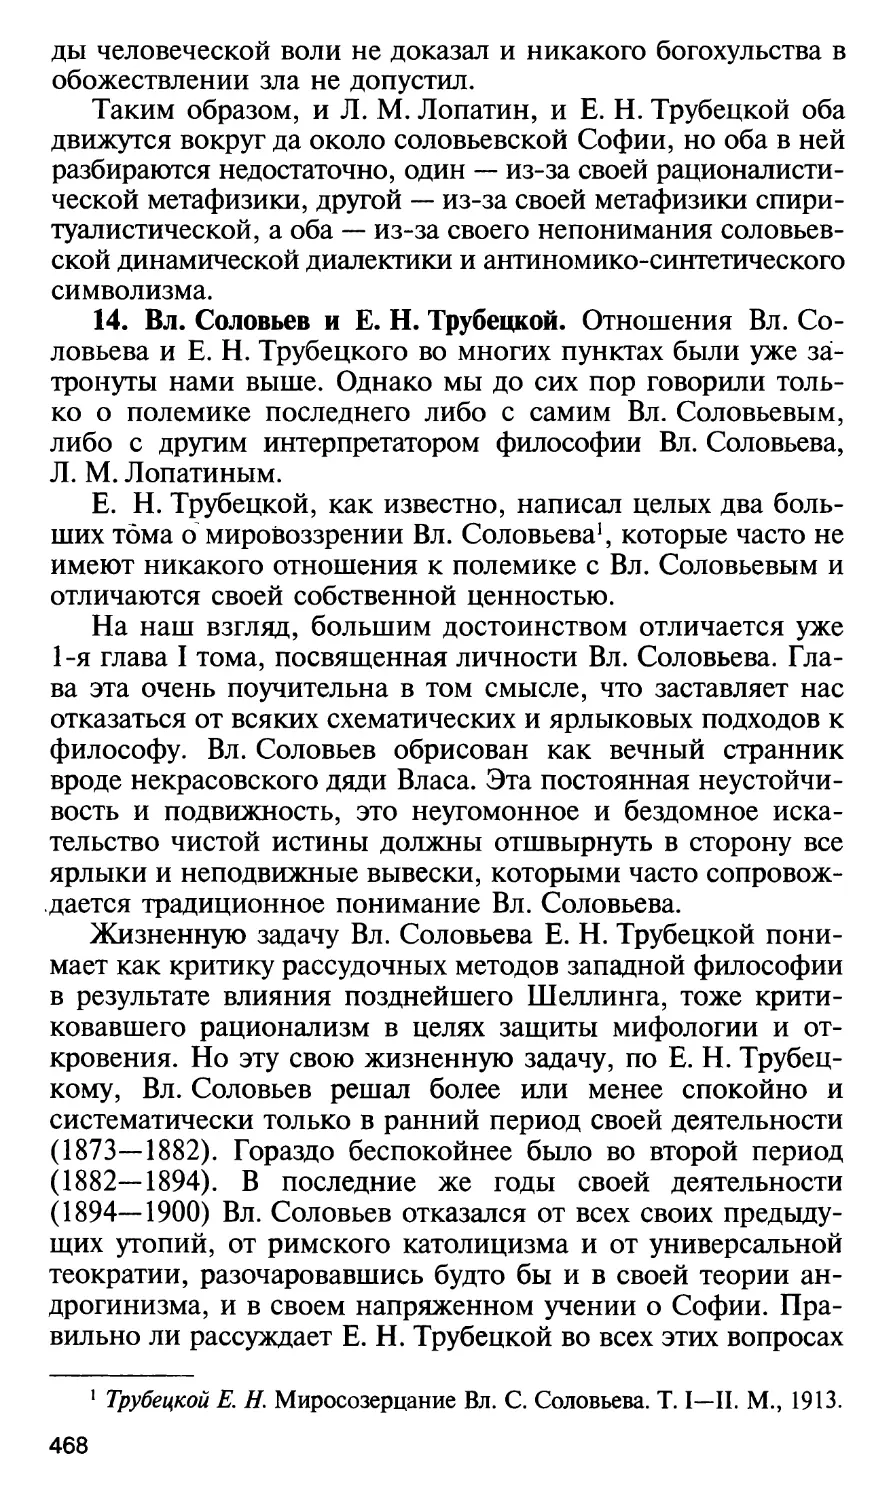 14. Вл. Соловьев и Е. Н. Трубецкой